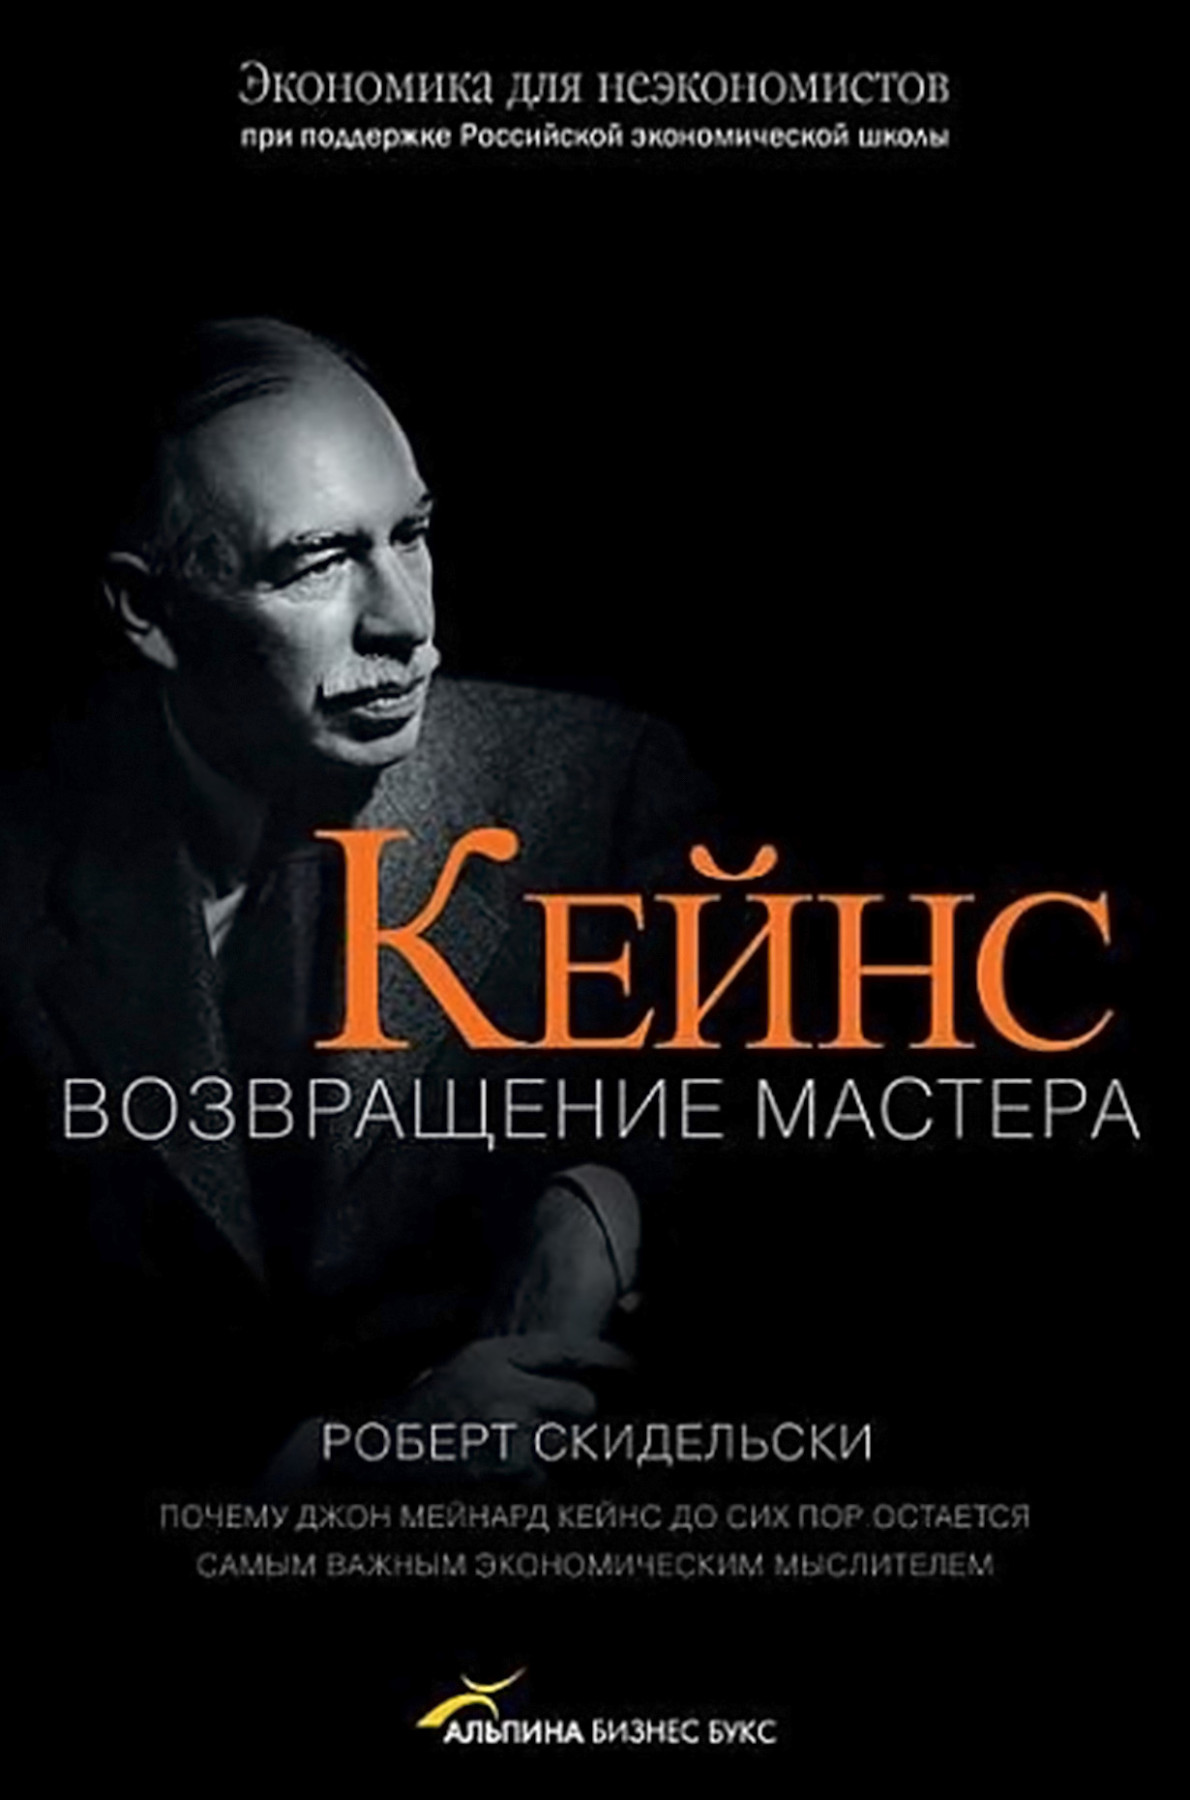 Кейнс обложка.